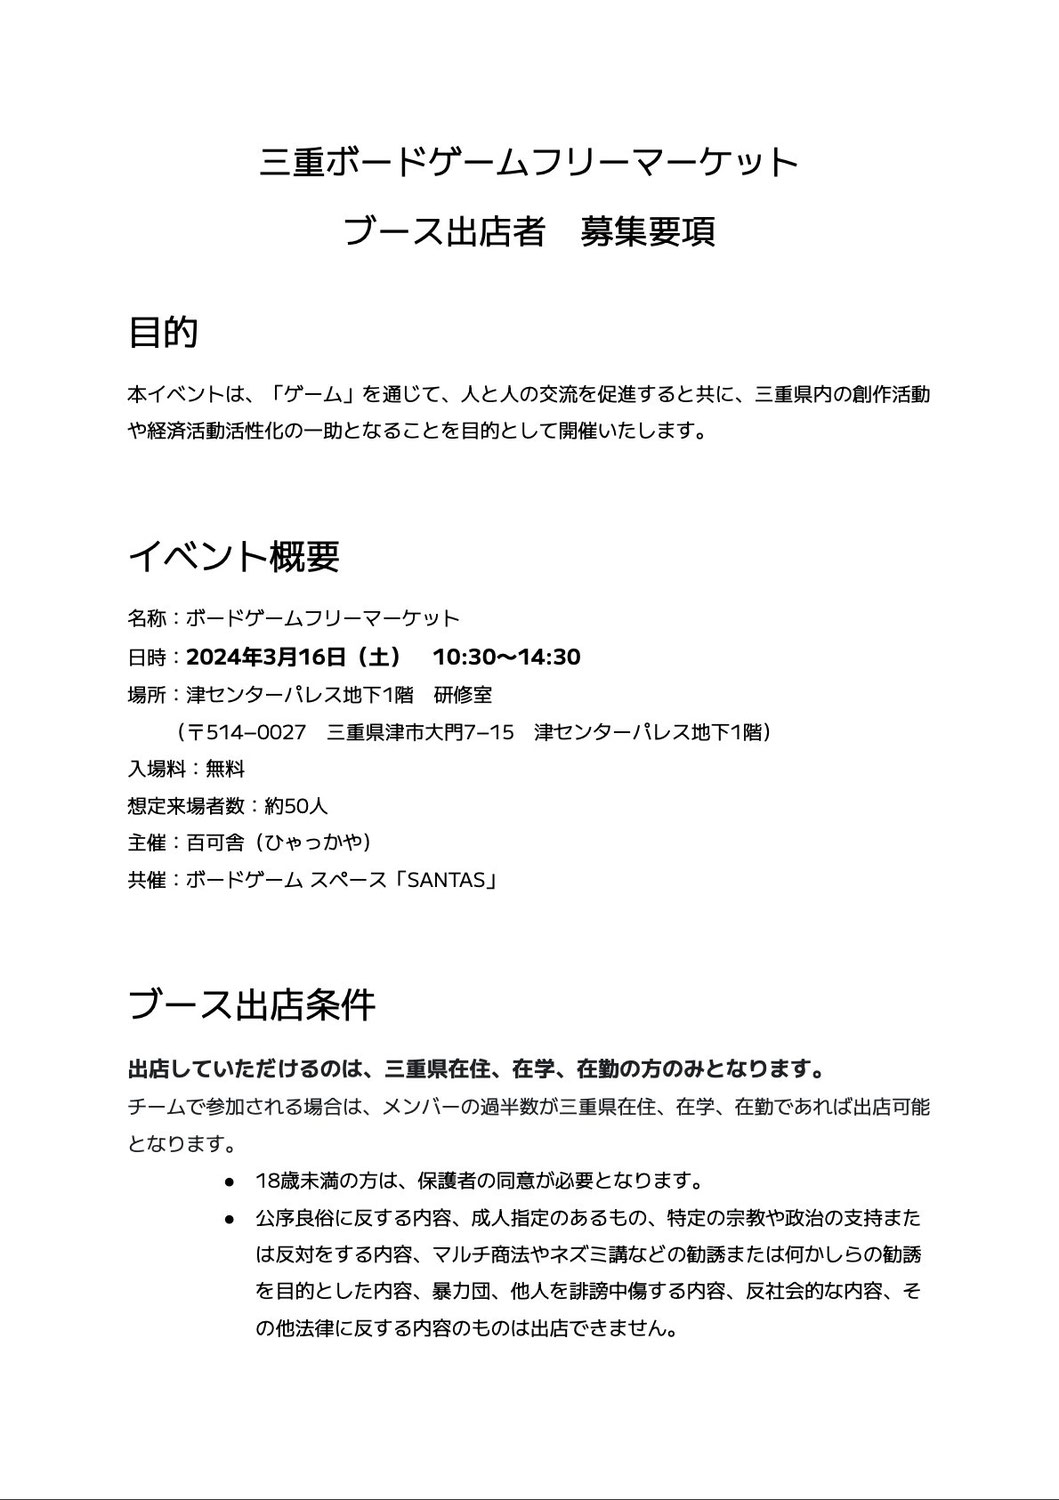 【2次募集】「三重県ボードゲームフリーマーケット」の出店者を募集します。